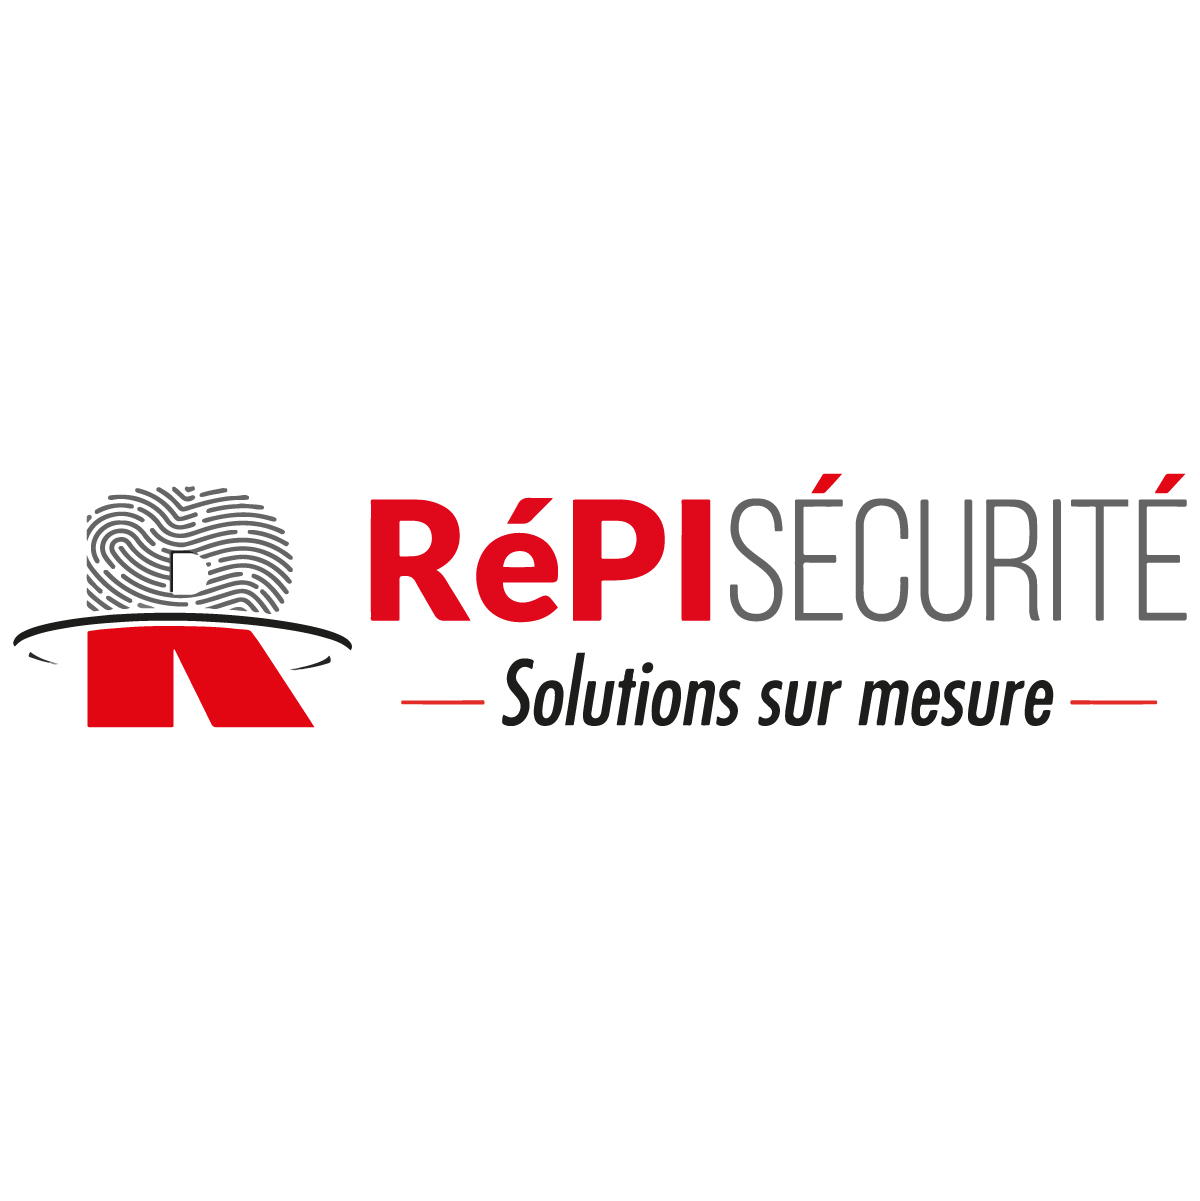 (c) Repi-securite.com